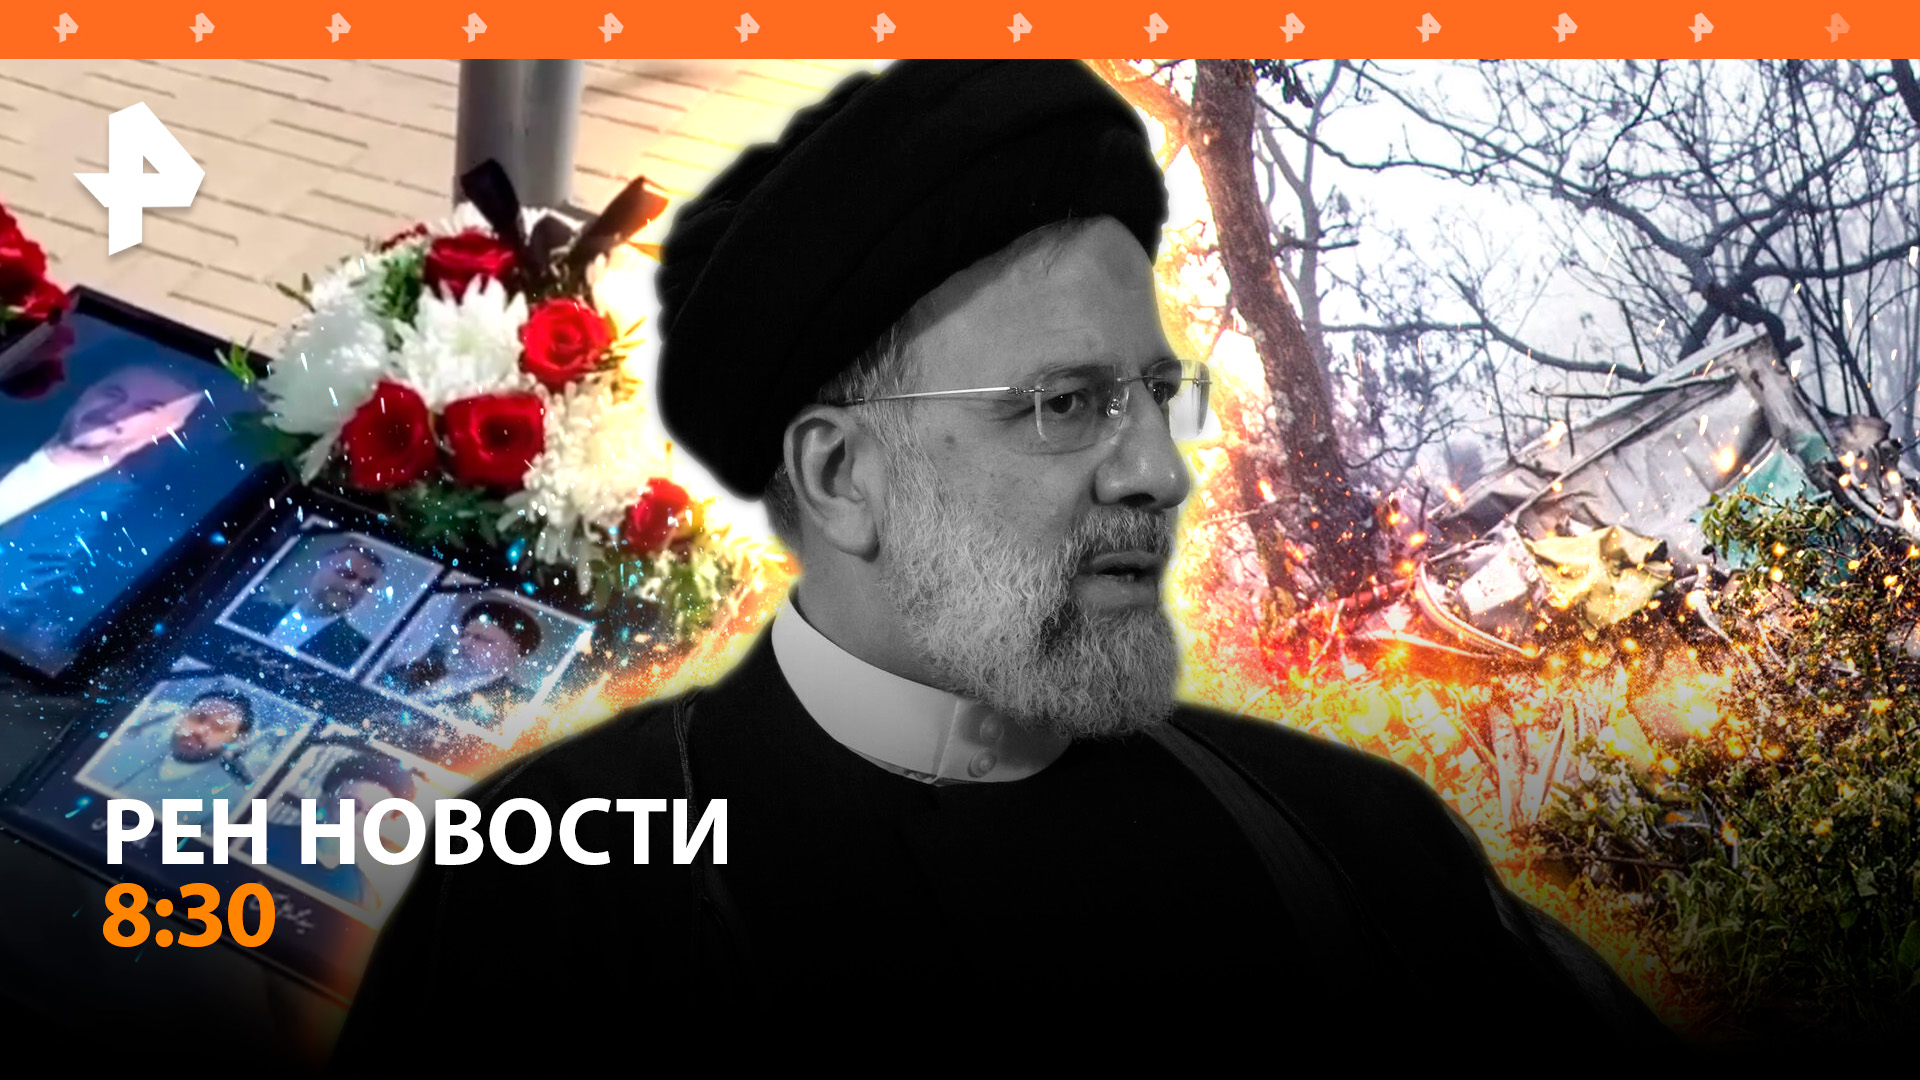 В Иране прощаются с погибшим президентом / Наземный дрон взорвал опорник ВСУ / РЕН Новости 21.05